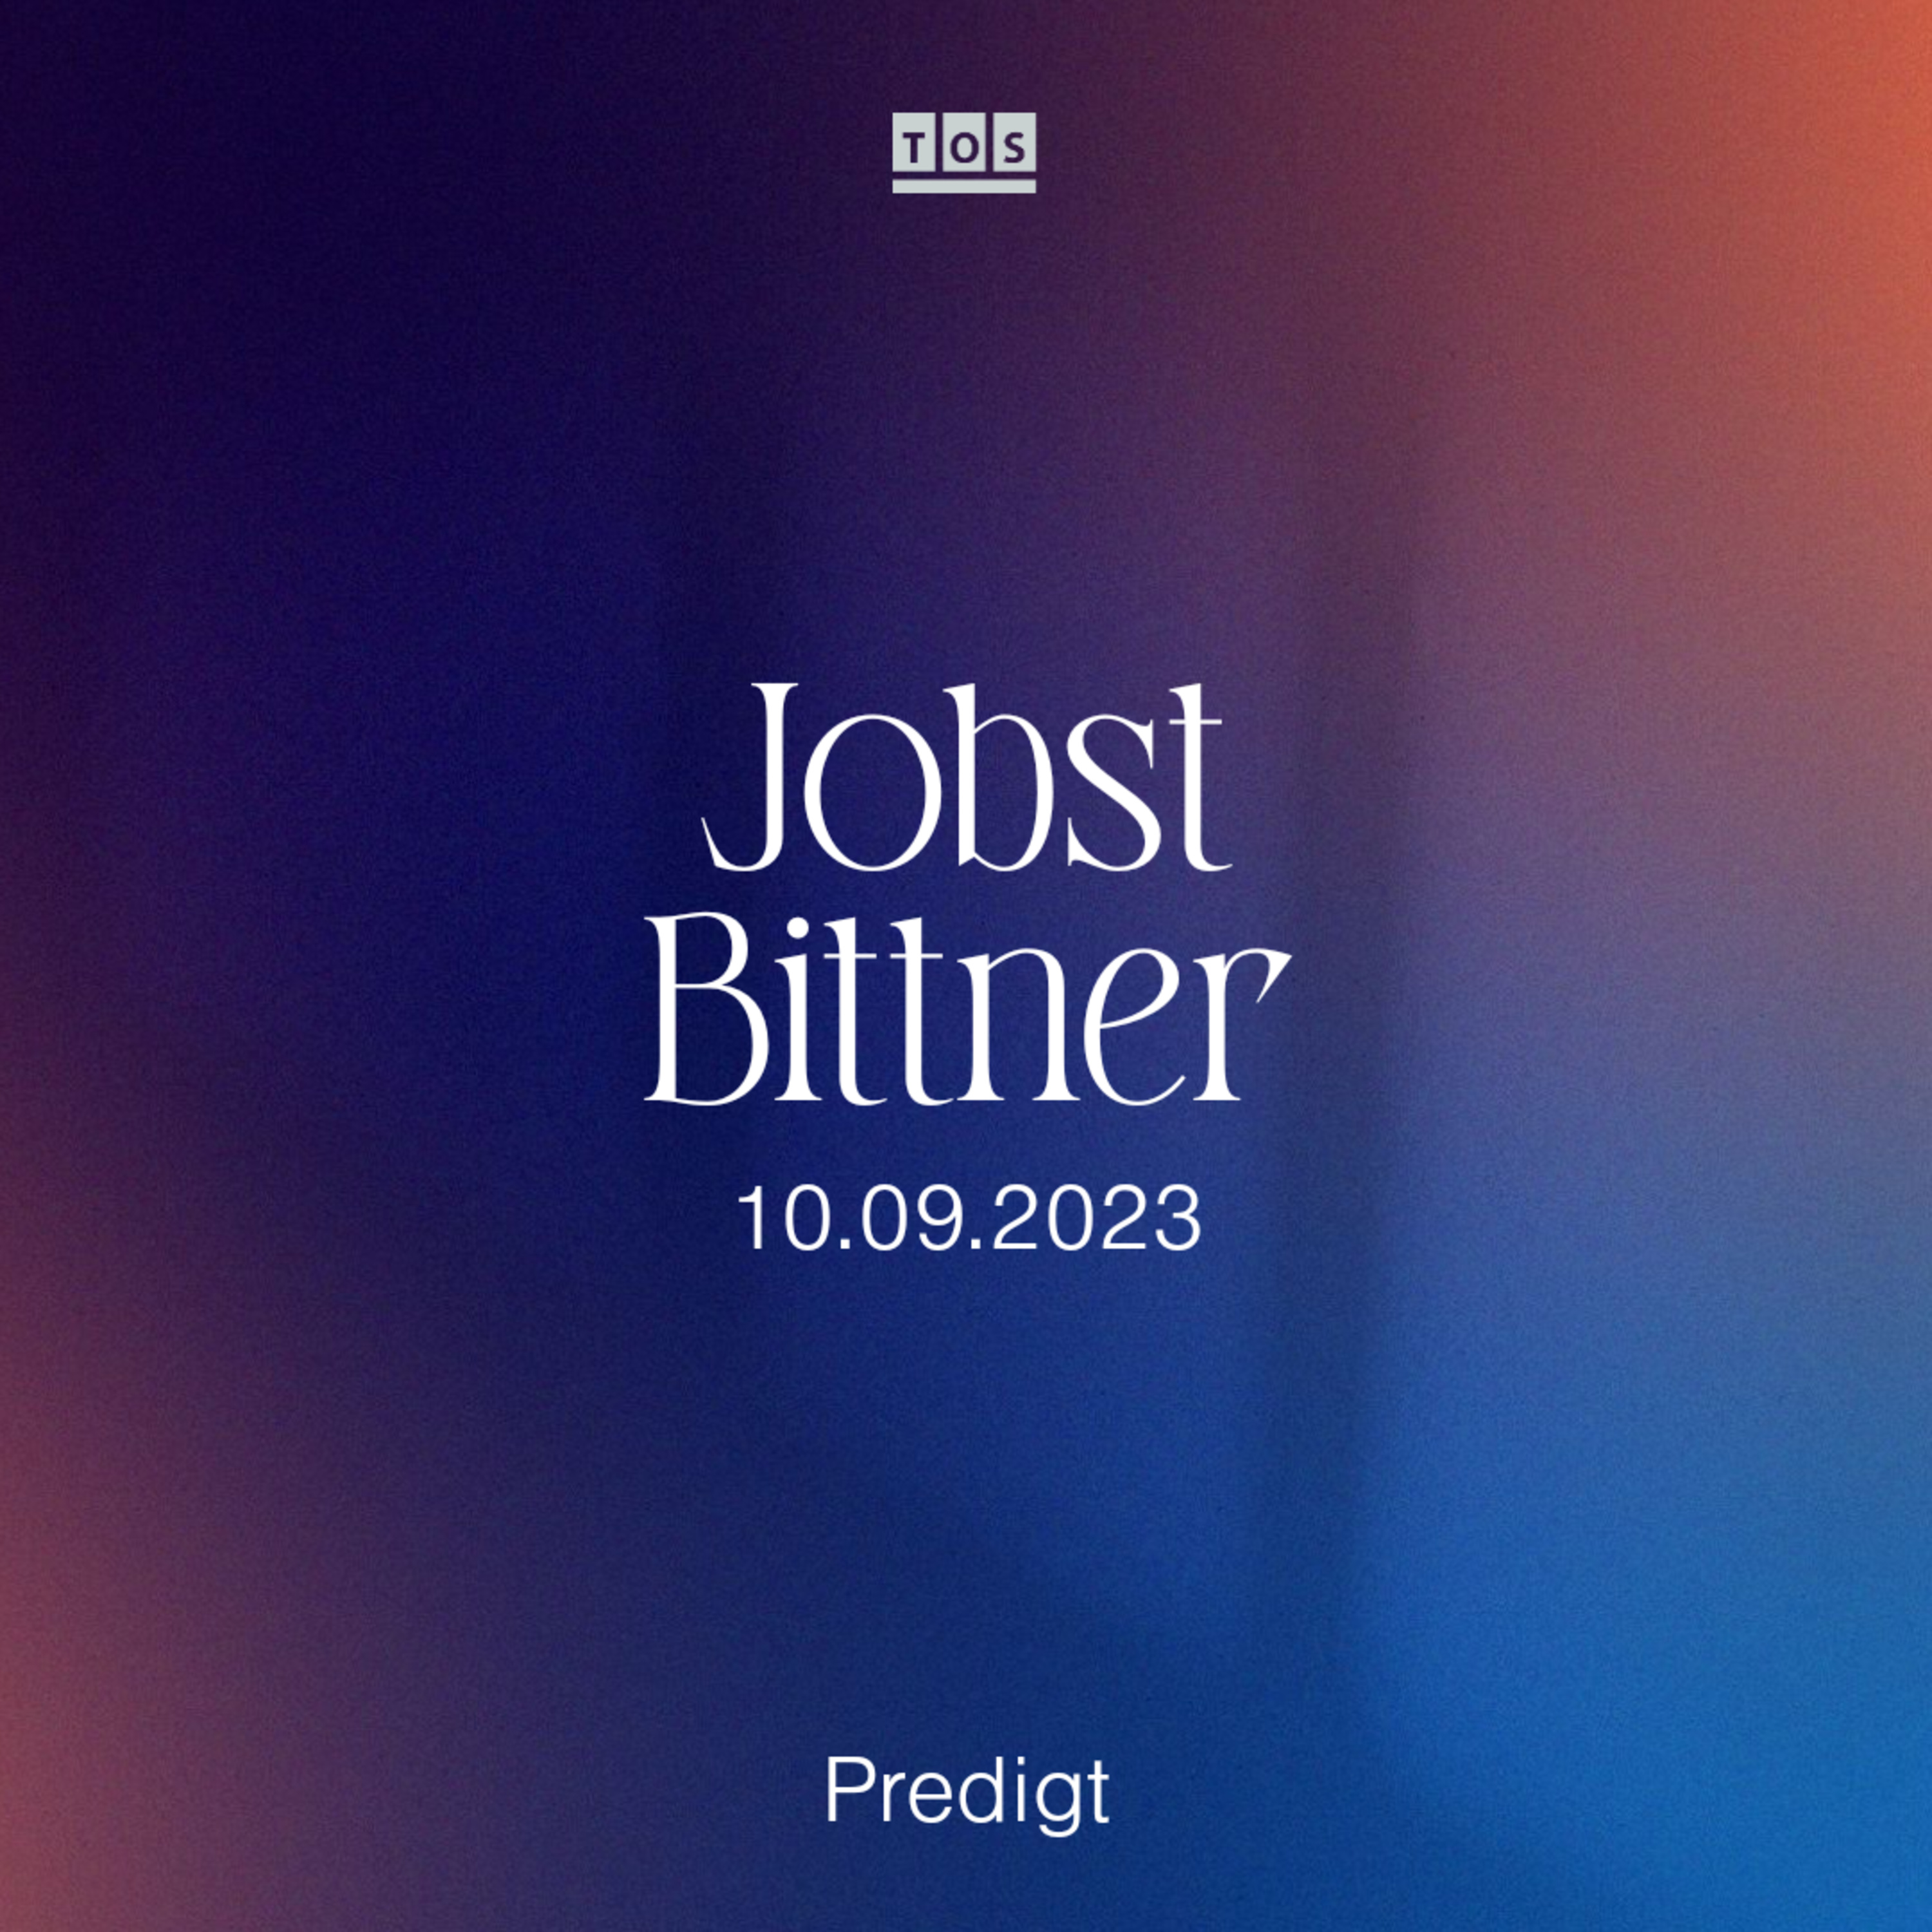 Jobst Bittner - Die Kraft des Vertrauens hero artwork